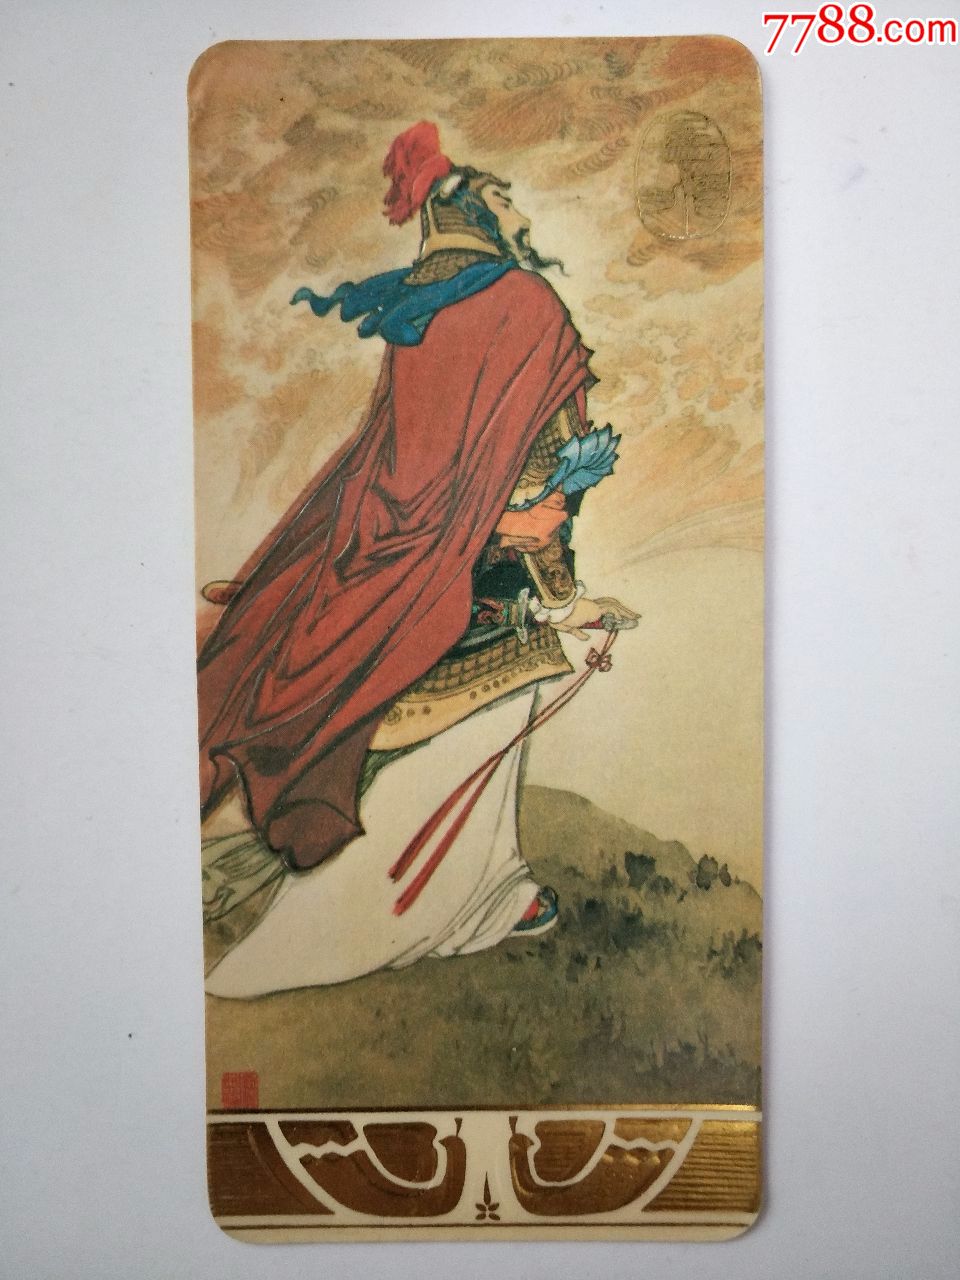 岳飞人物历史卡片图片